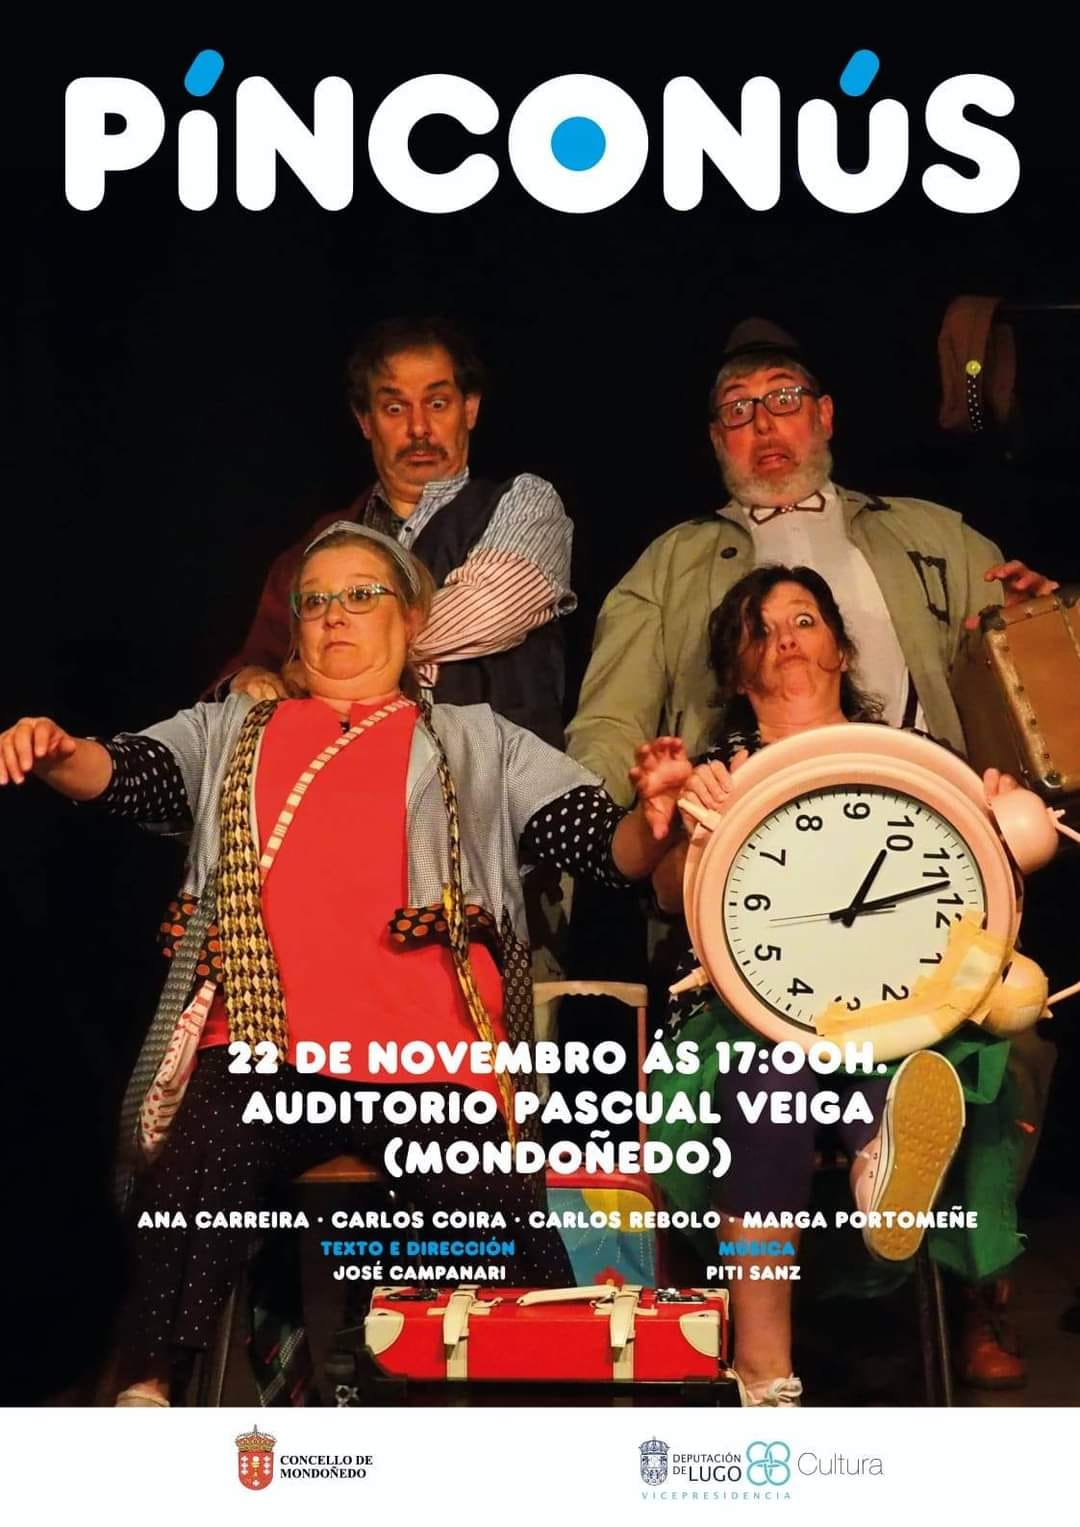 Cartel Pinconús - Pisconús teatro en Mondoñedo